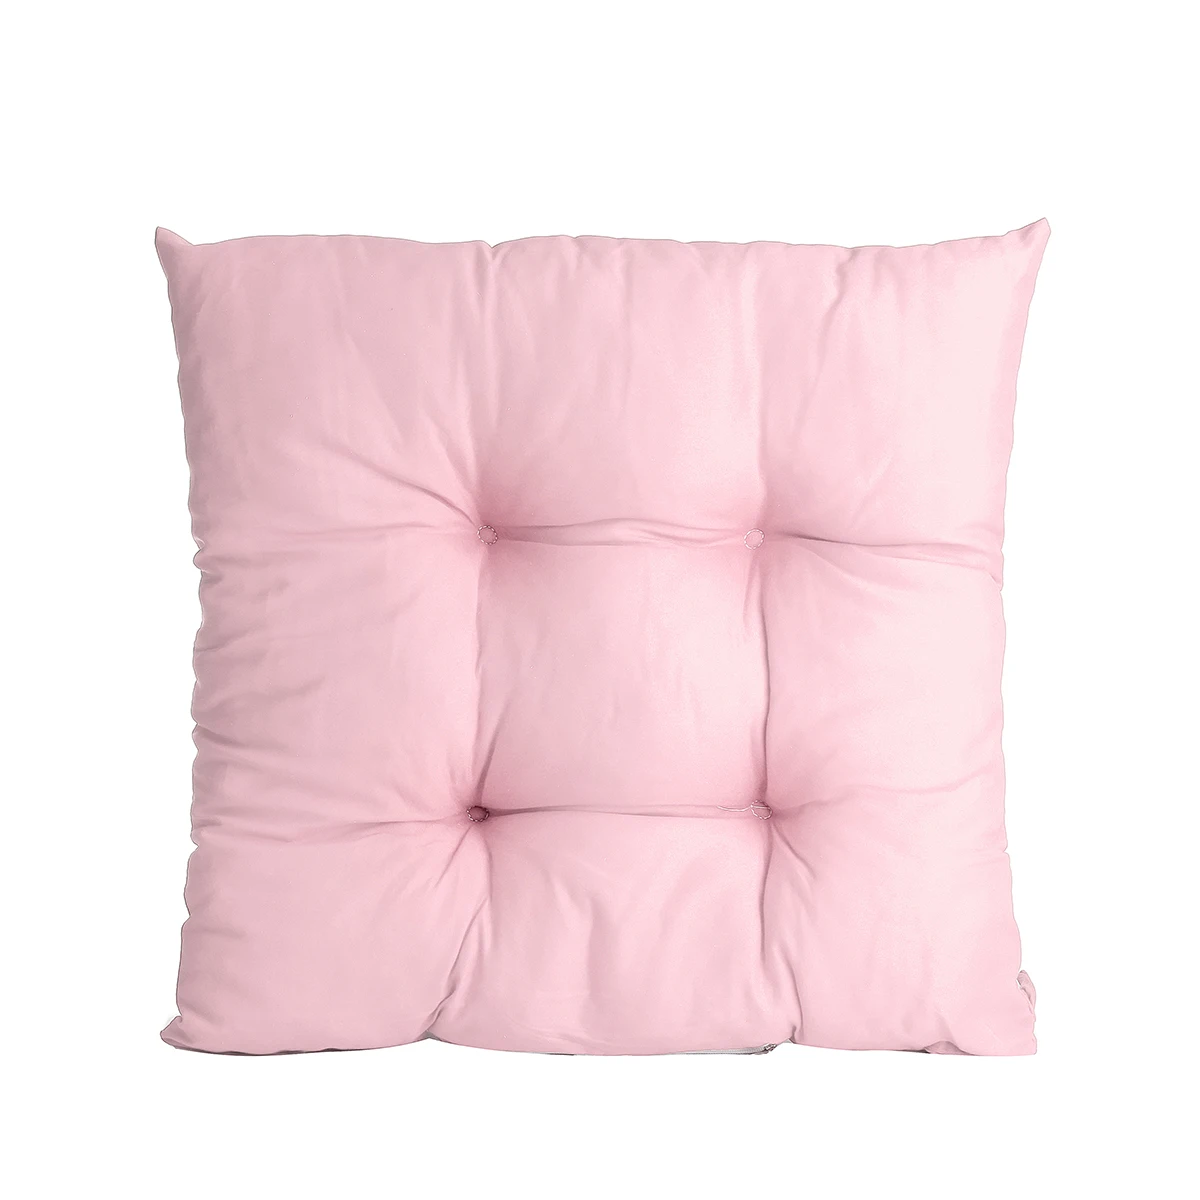 13 Цвет мягкие удобные Офис патио подушка для кресла, дивана подушка 40 х 40 см сиденье колодки садовая мебель Декор - Цвет: Розовый